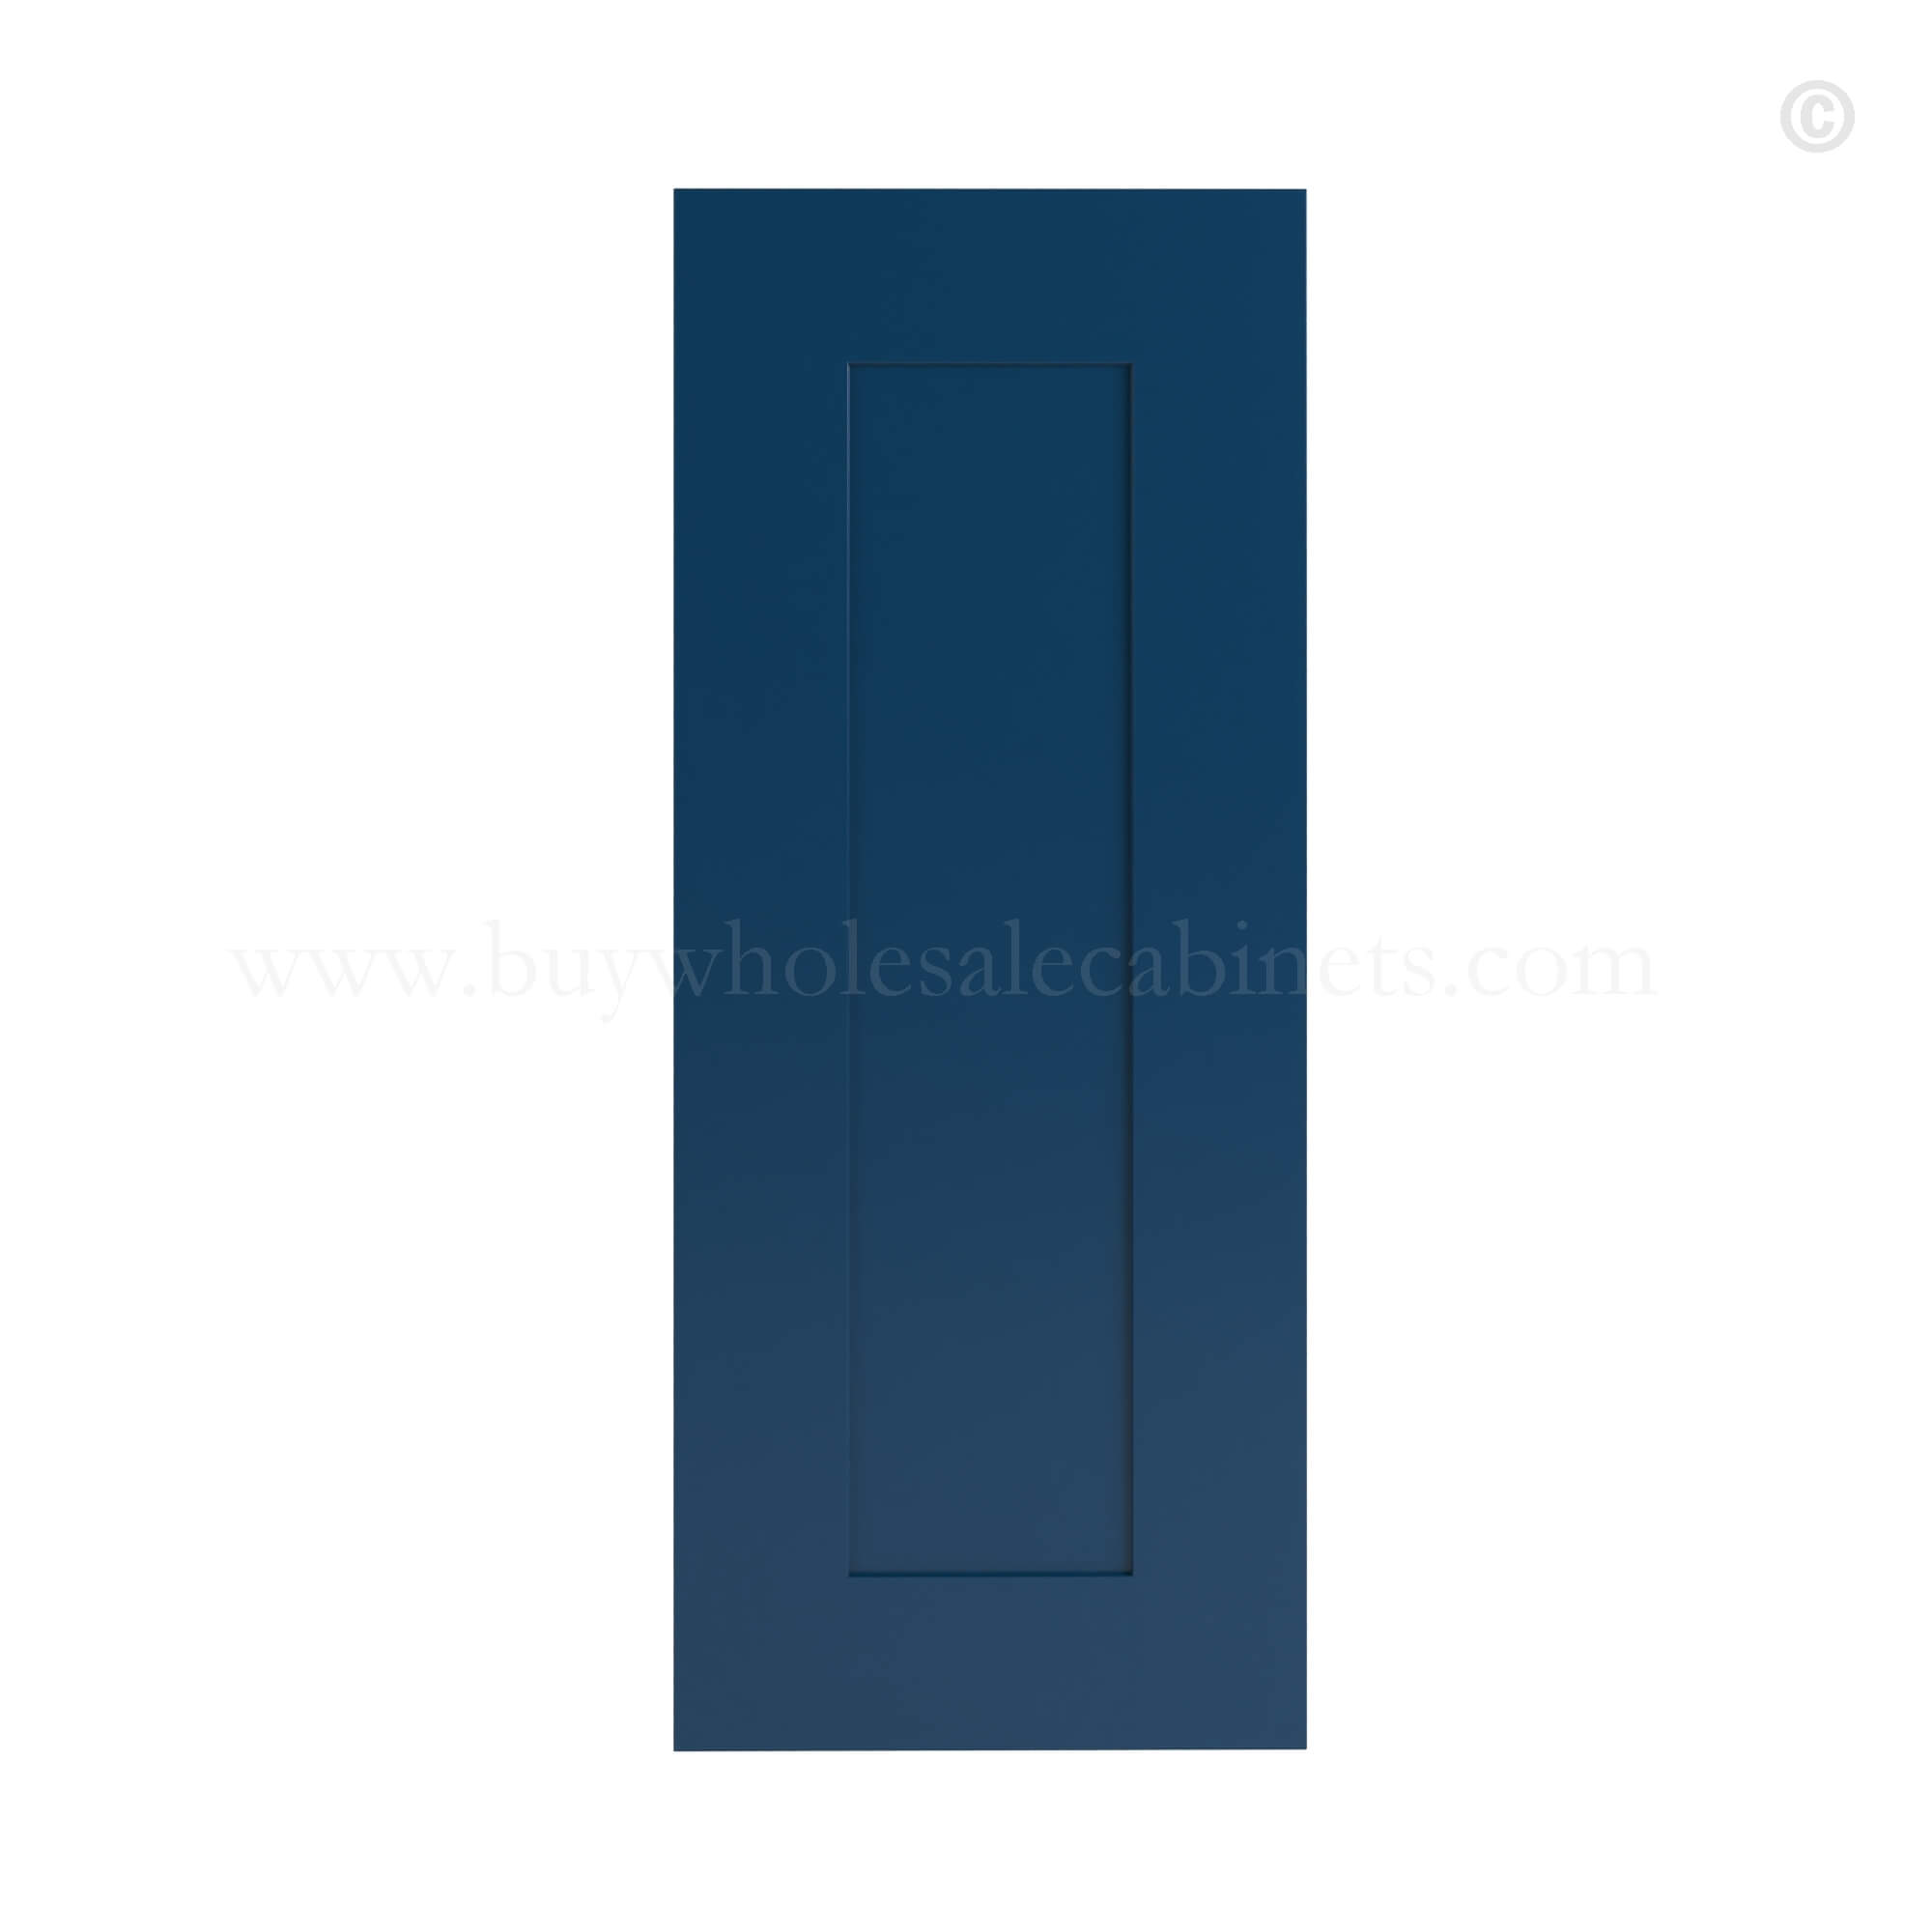 Navy Blue Shaker Wall Decorative Door Panel